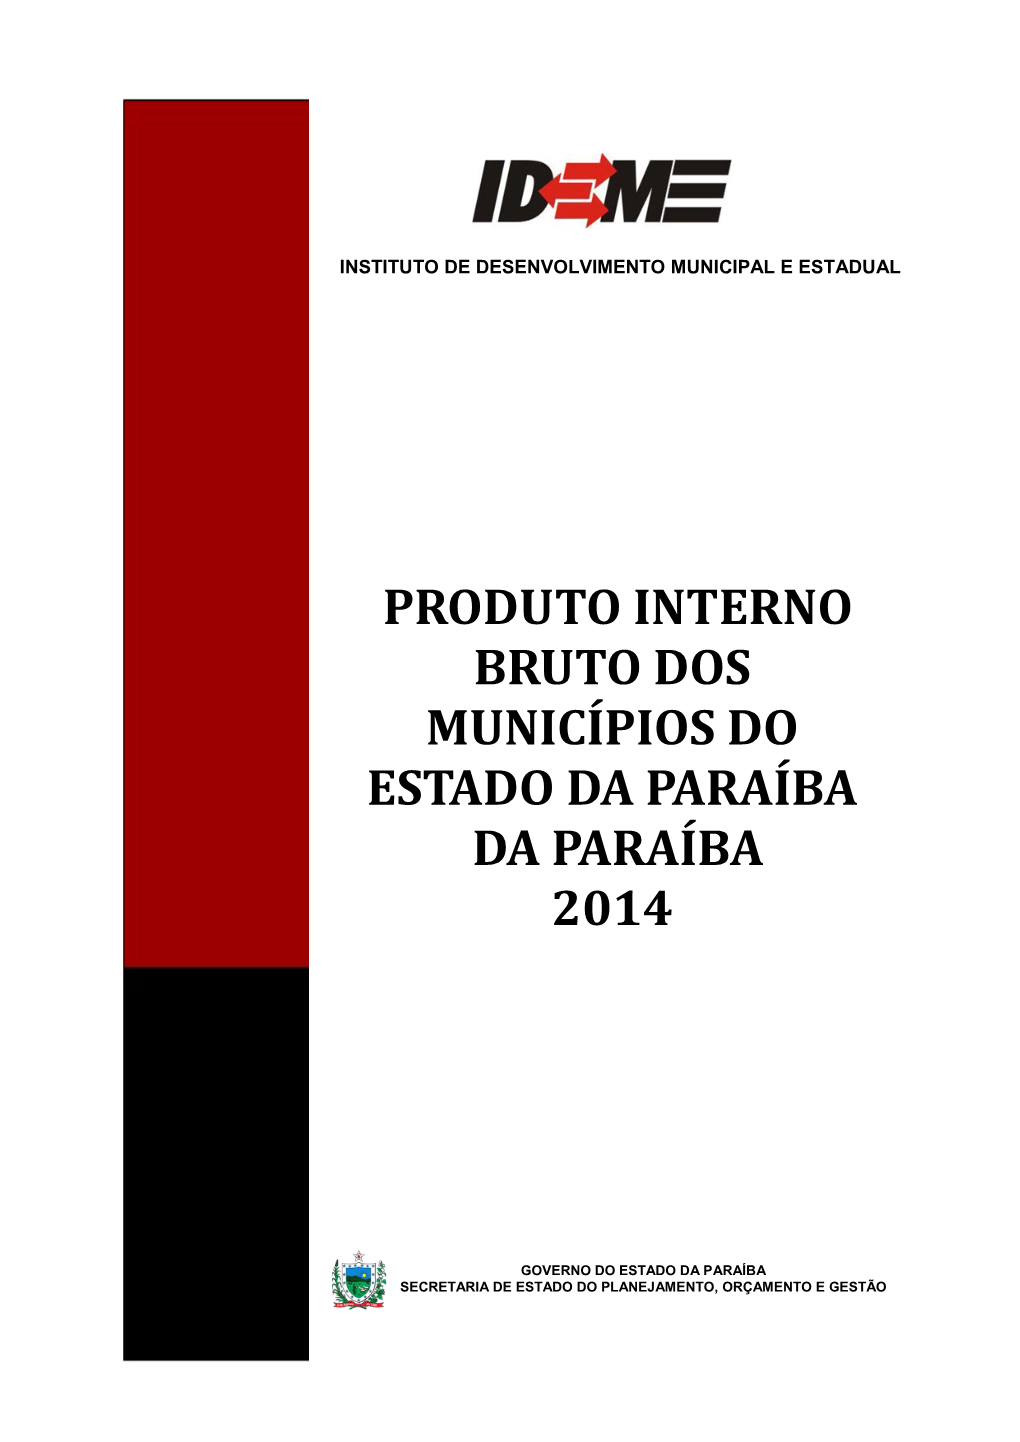 Produto Interno Bruto Dos Municípios Do Estado Da Paraíba Da Paraíba 2014